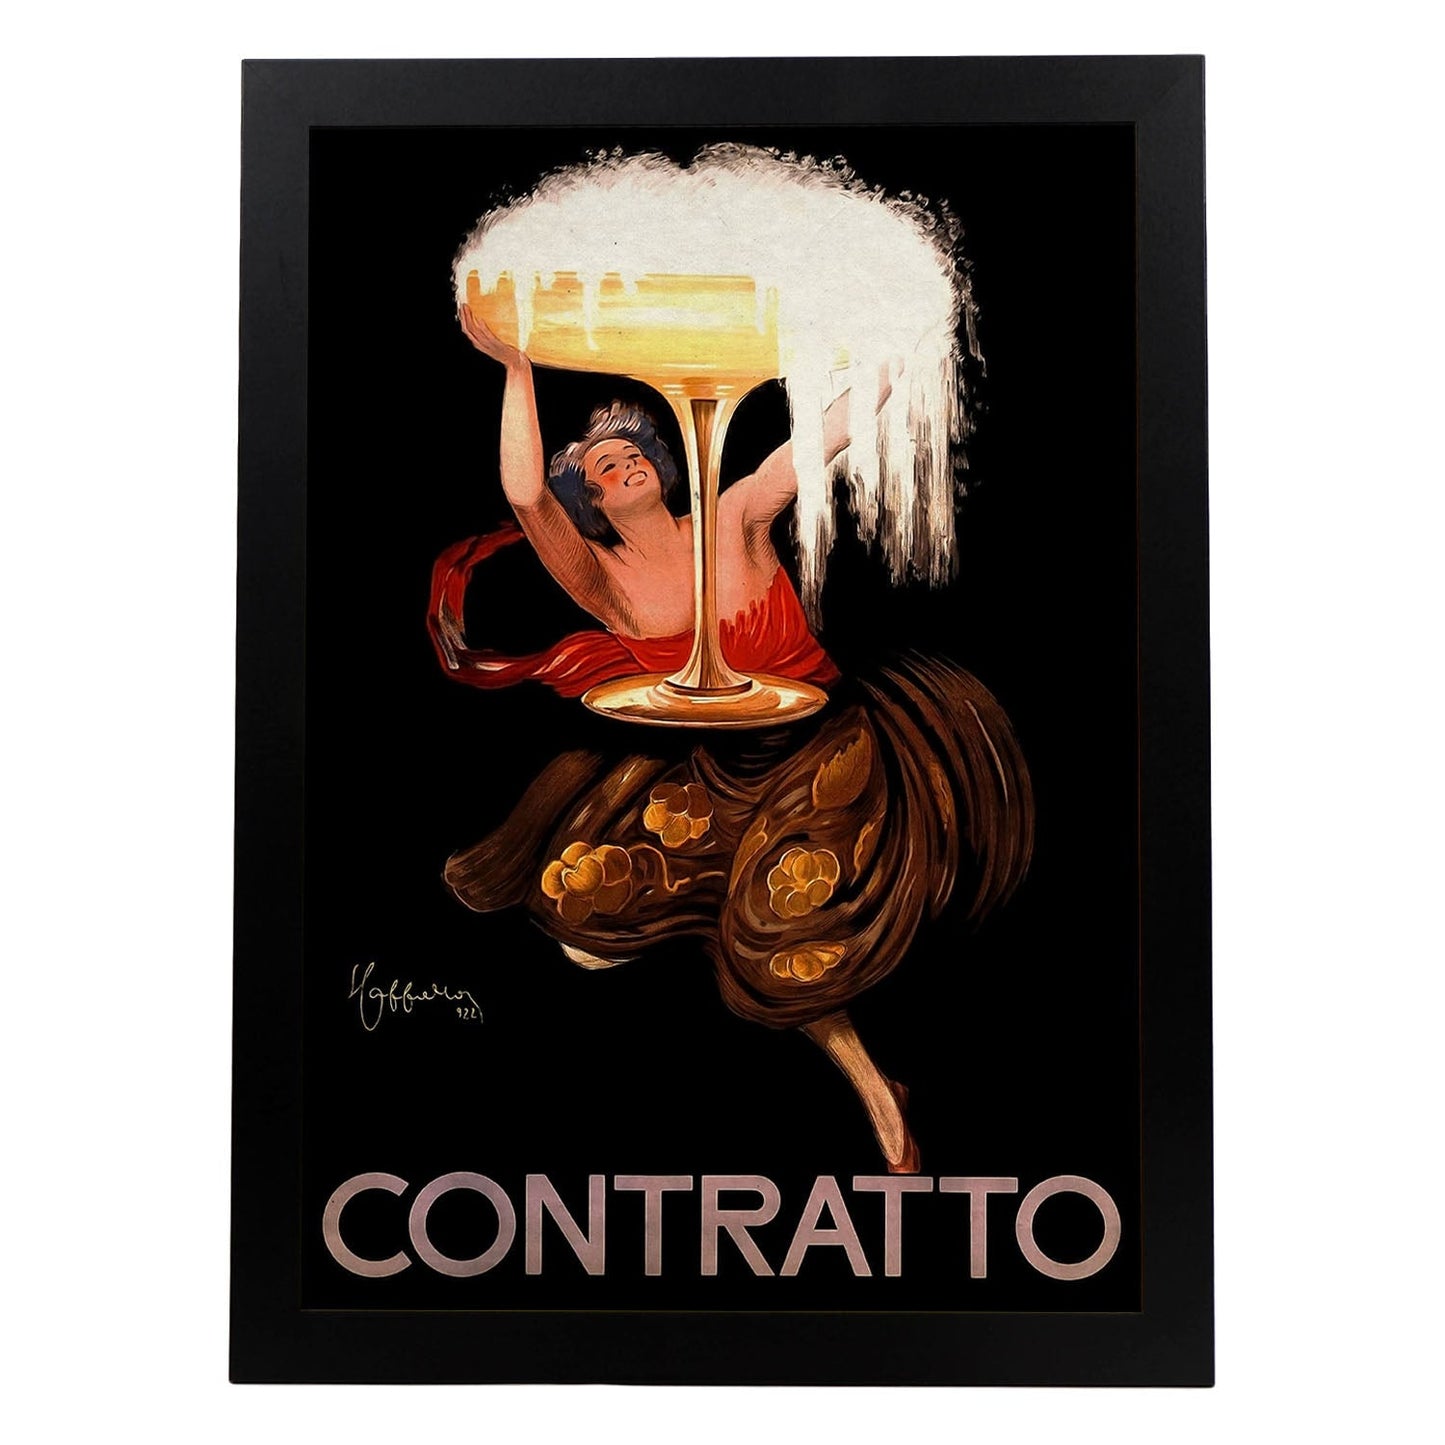 Poster vintage de Contratto. con imágenes vintage y de publicidad antigua.-Artwork-Nacnic-A3-Marco Negro-Nacnic Estudio SL